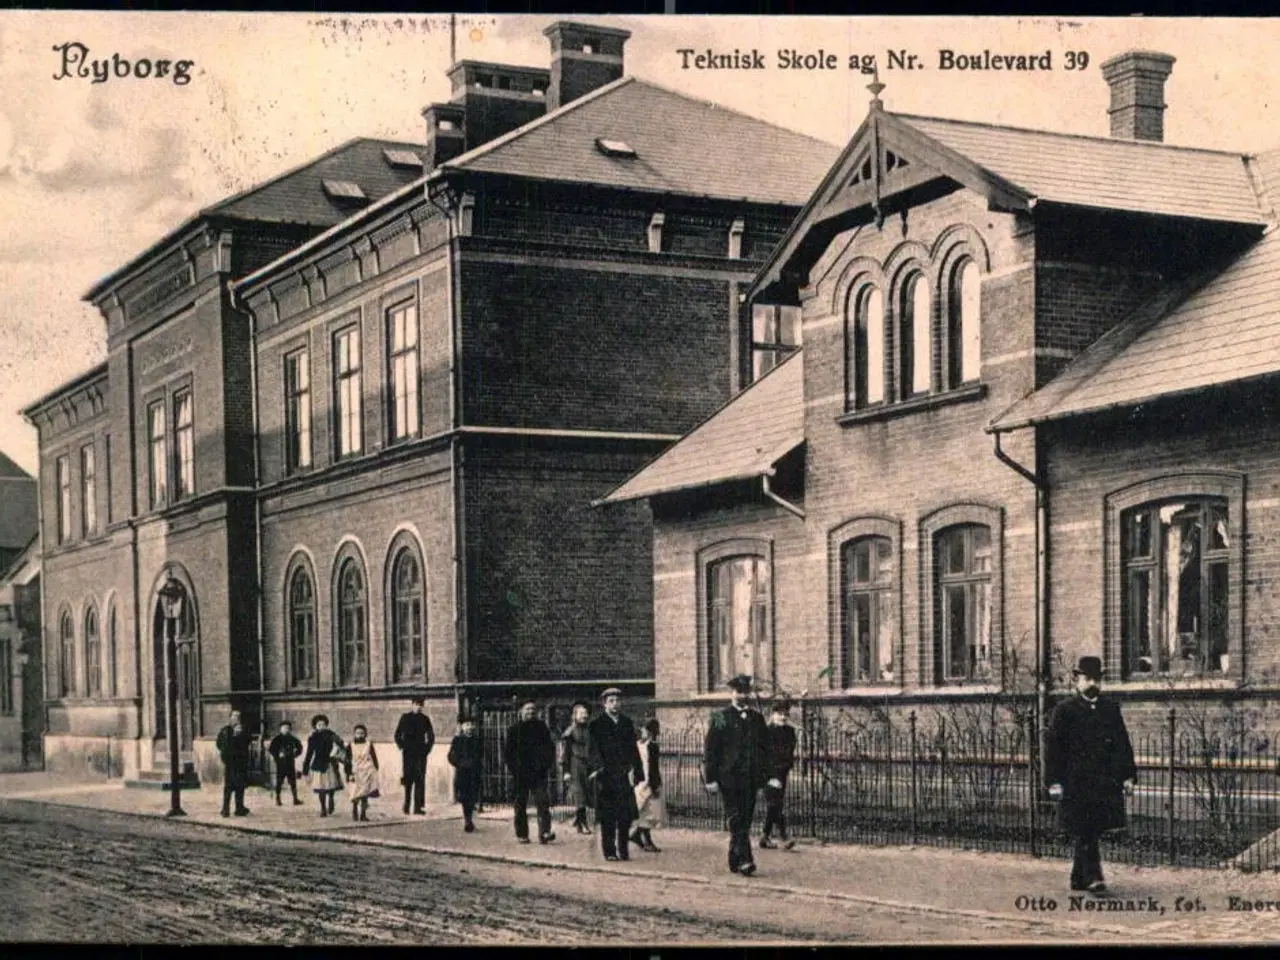 Billede 1 - Nyborg - Teknisk Skole og Nr. Boulevard 39 - Otto Normark u/n - Brugt